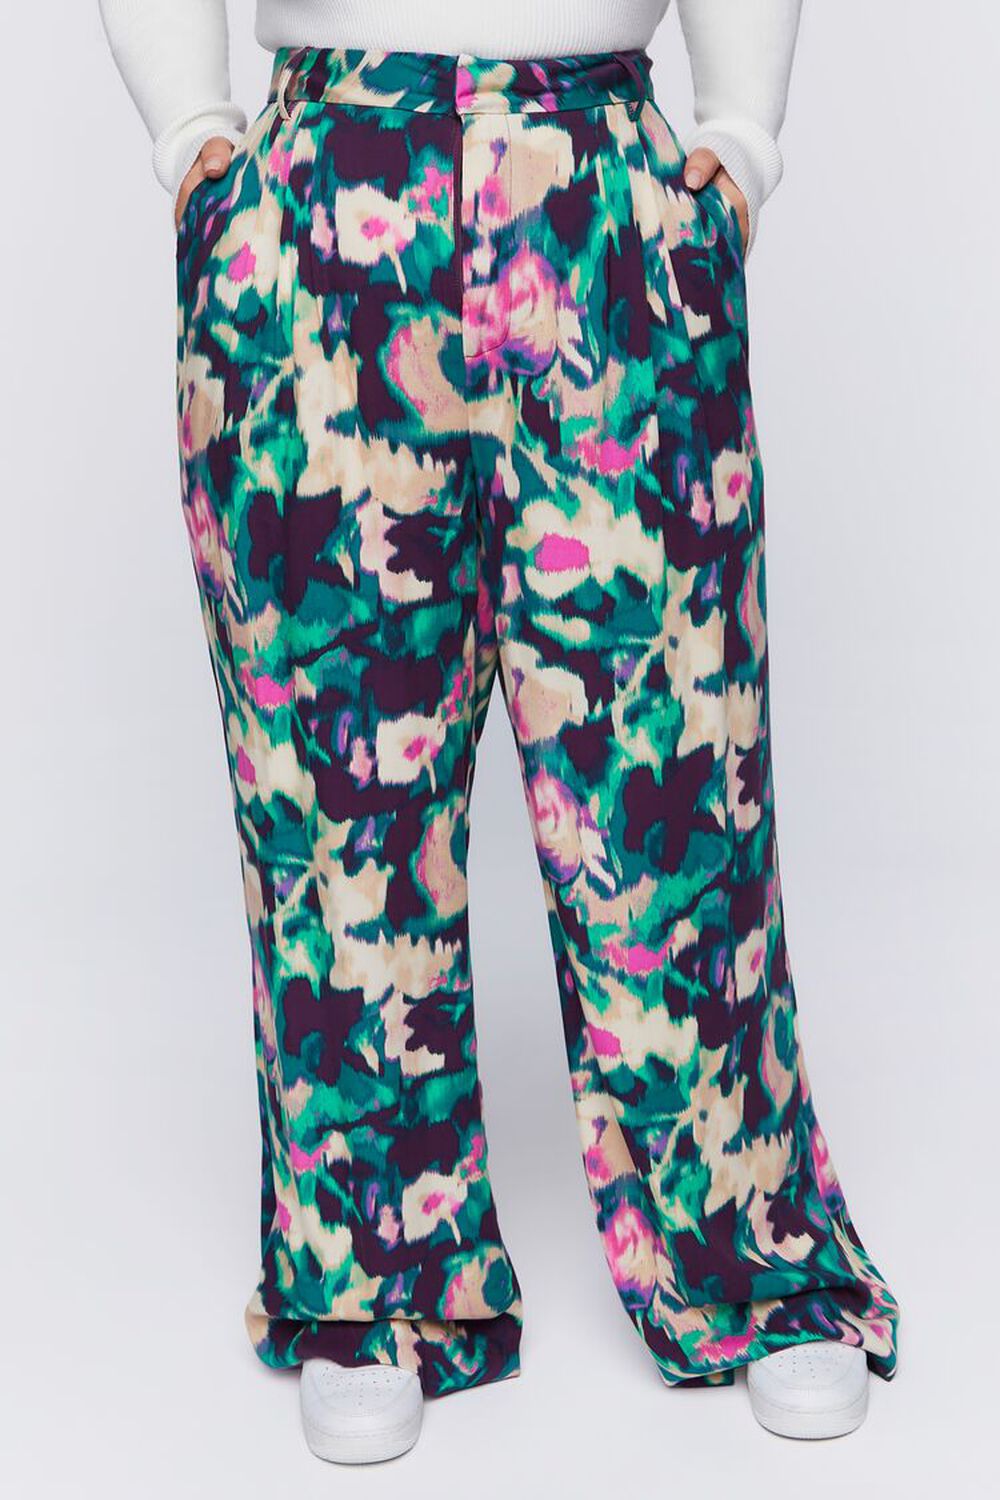 PLUM/MULTI Plus Size Floral Print Wide-Leg Pants, image 2